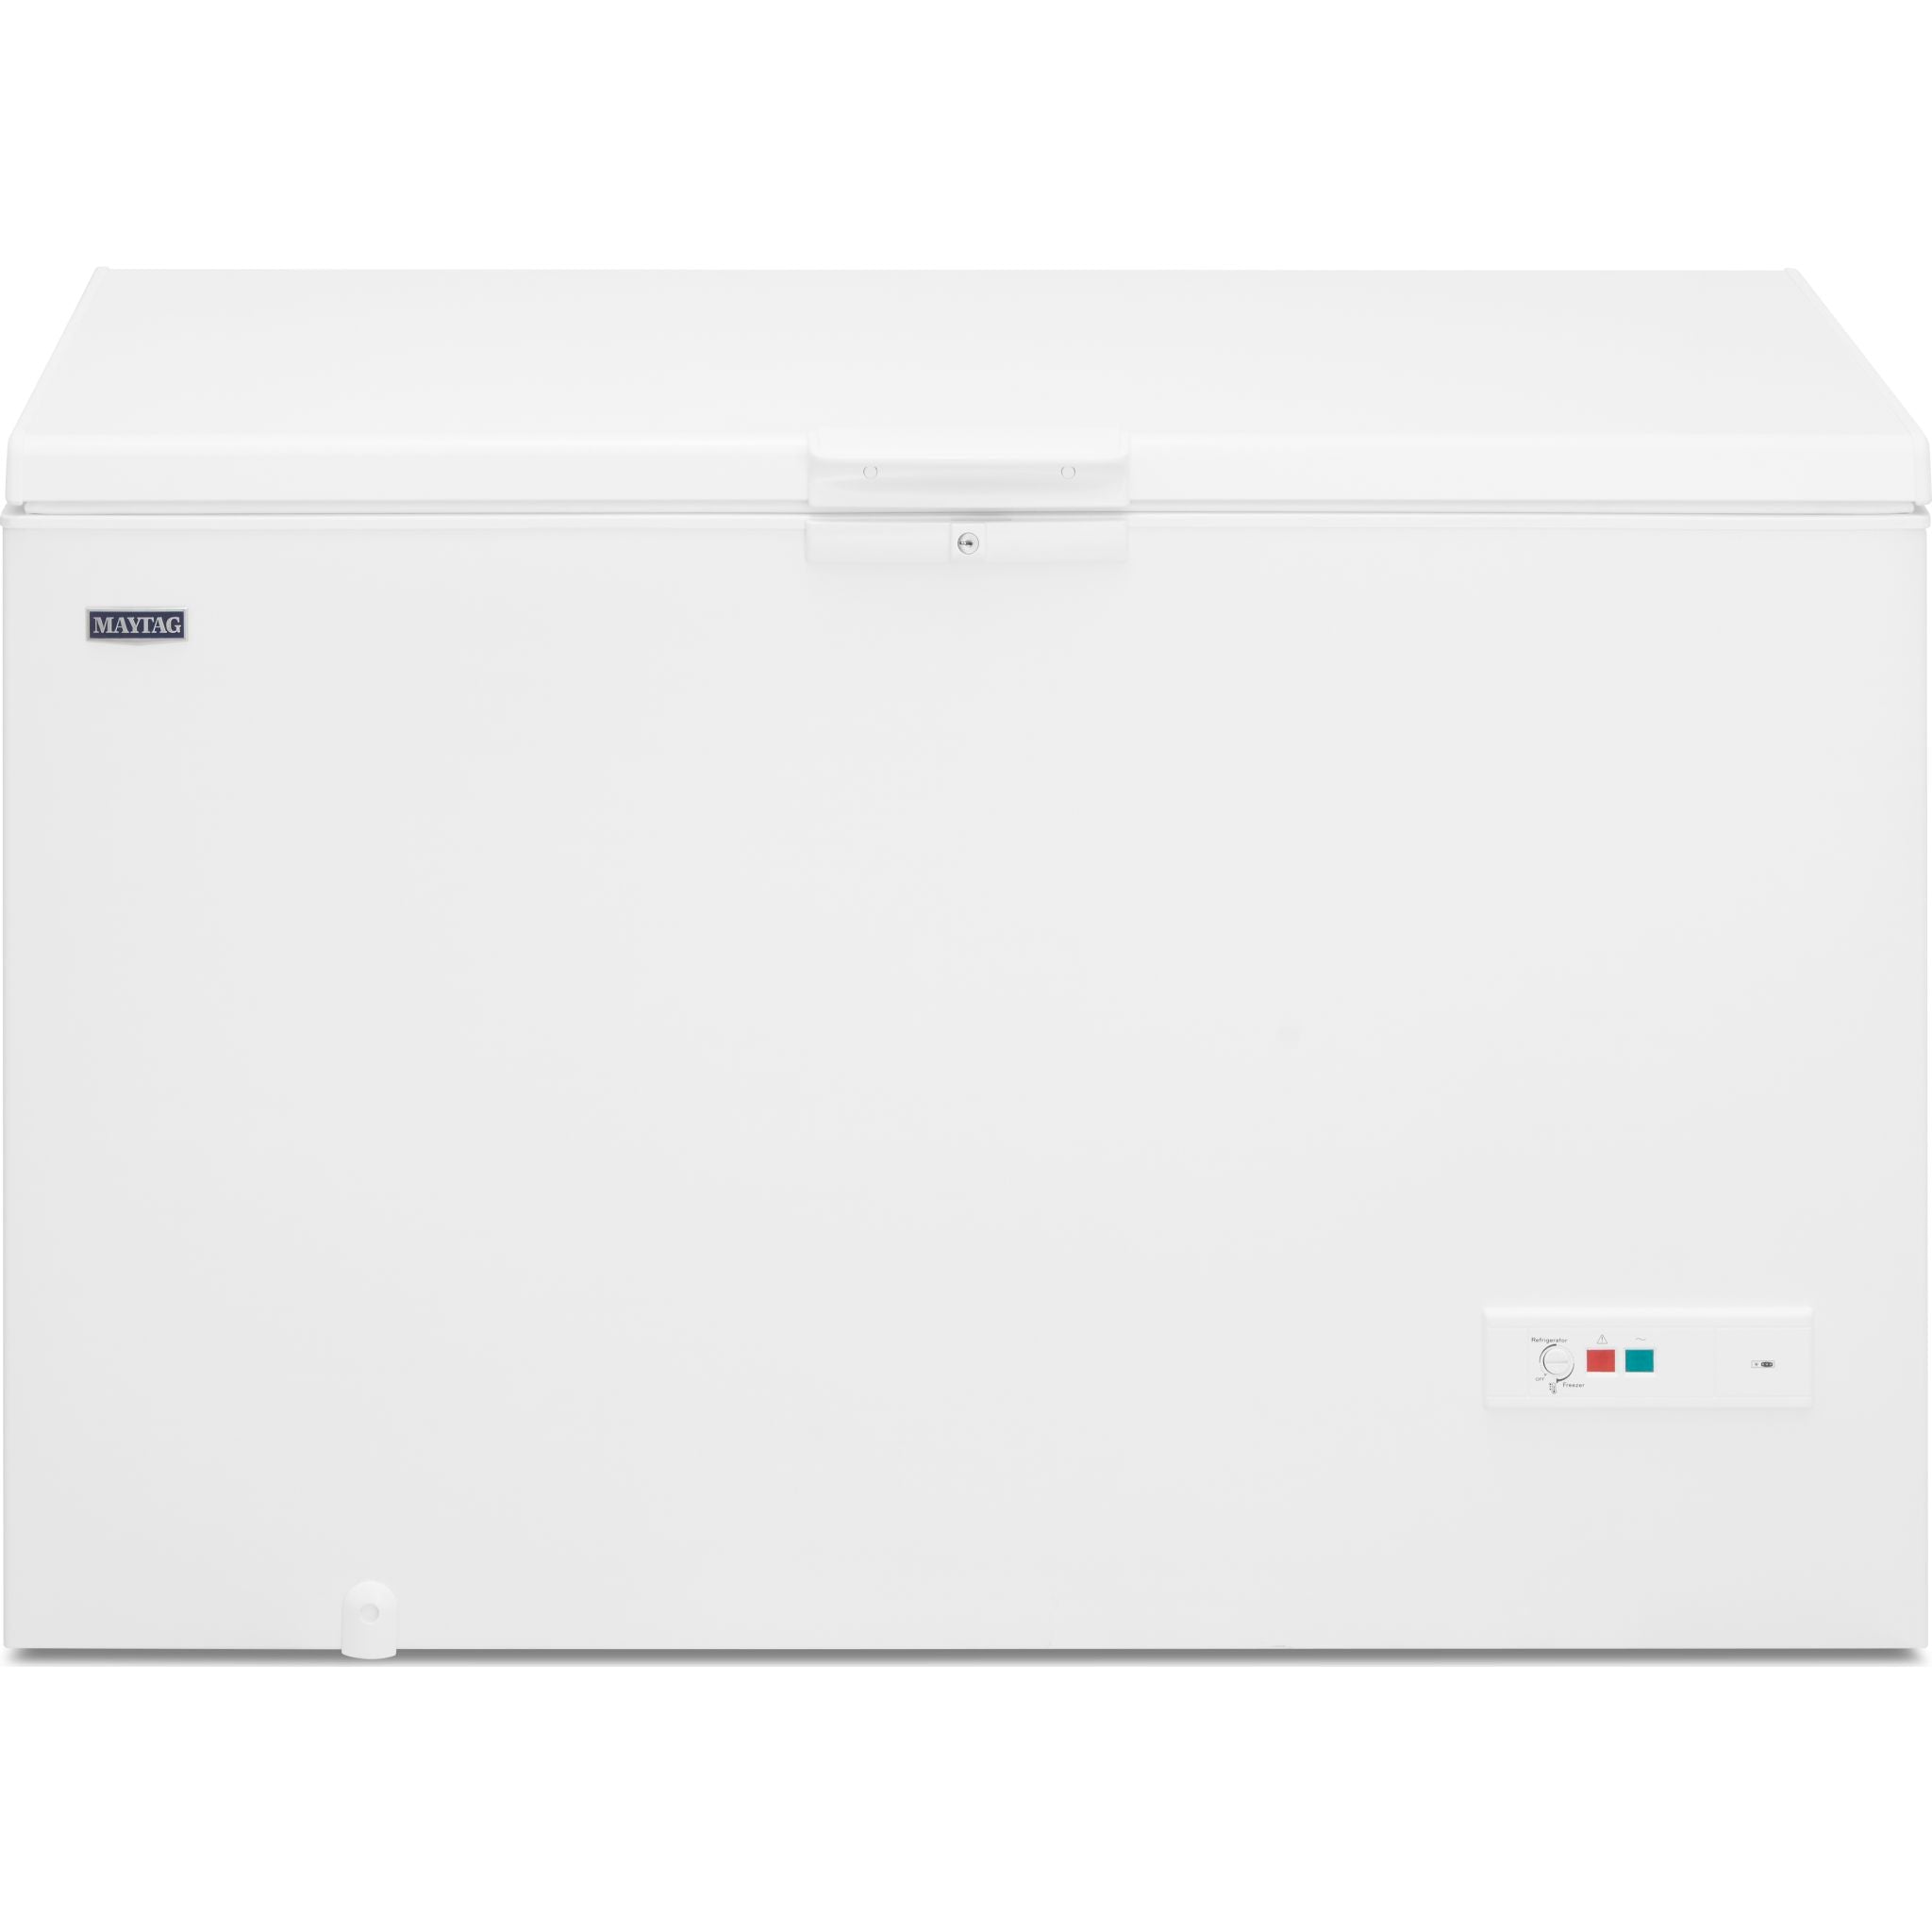 Maytag Chest Freezer (Mzc5216lw) In White, Size: 19"-60" H X 38" W